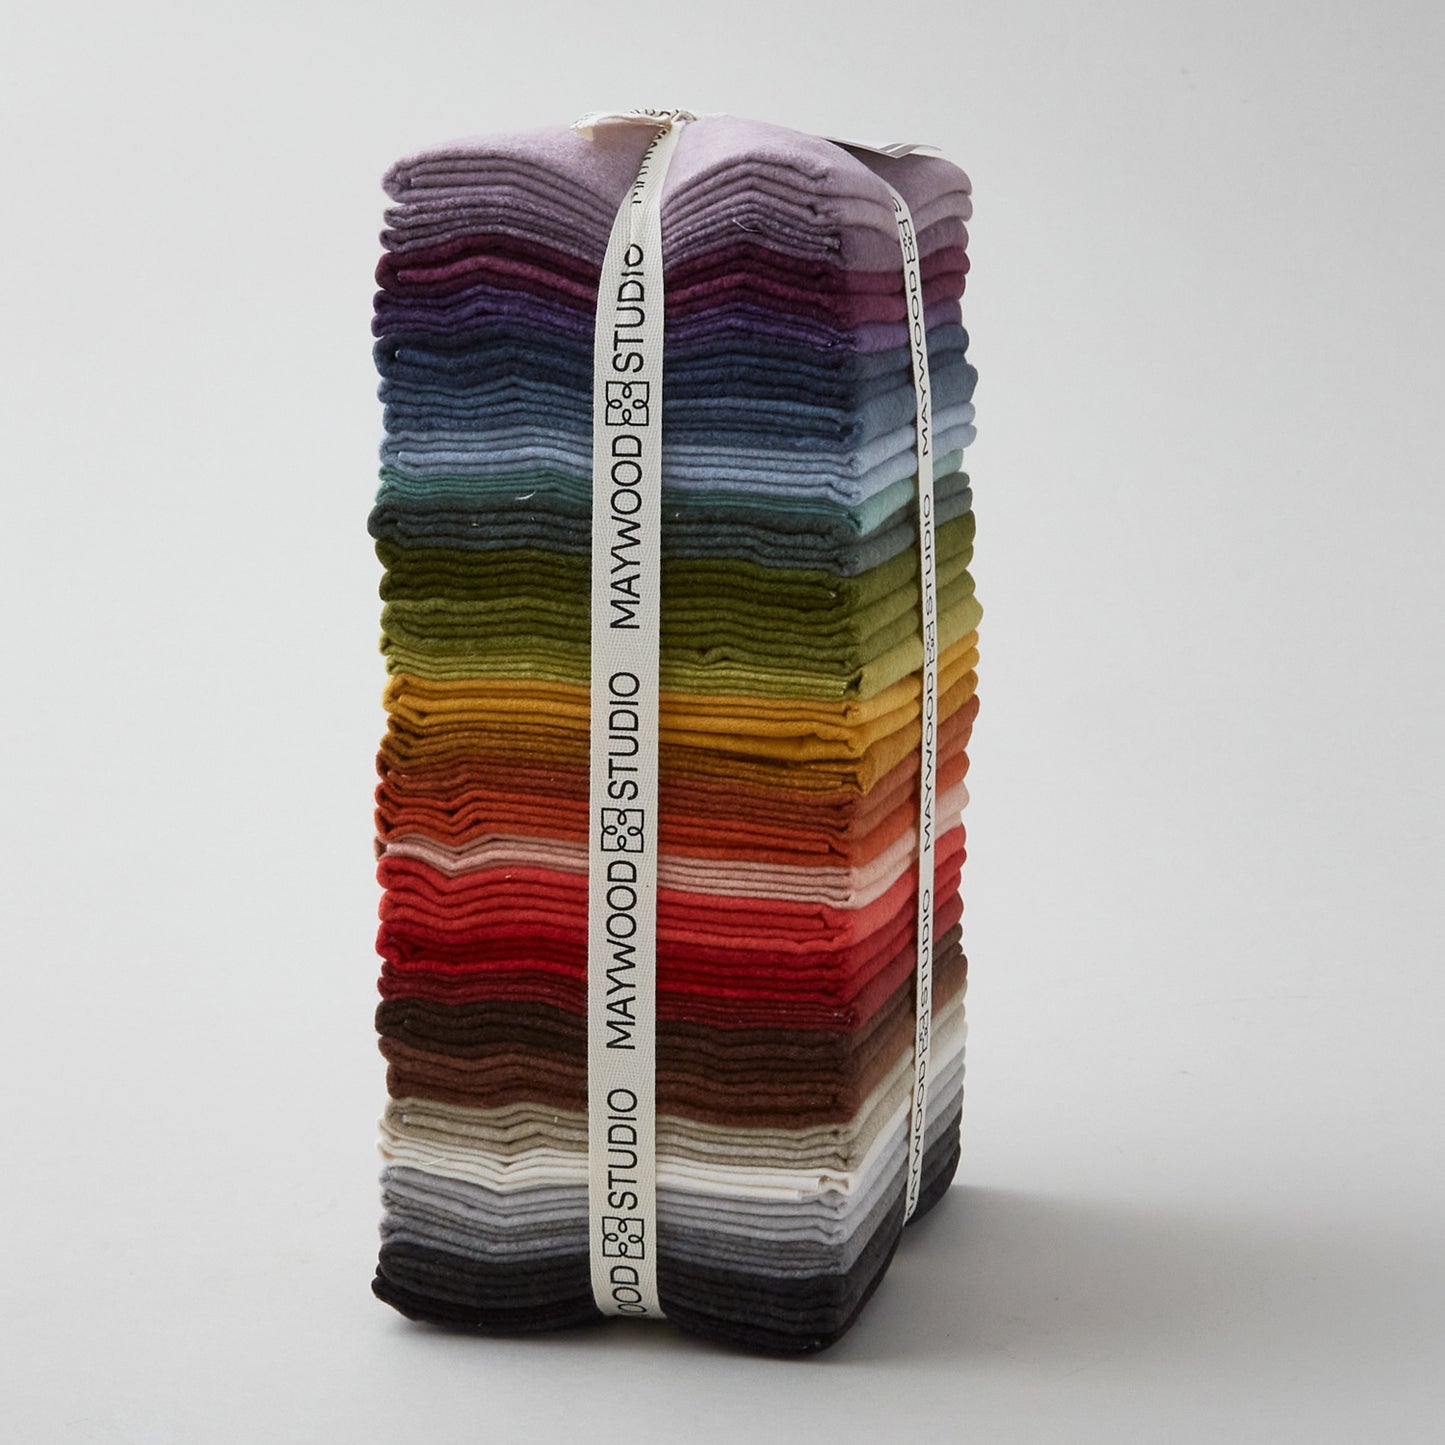 Woolies Flannel - Colorwash Fat Quarter Bundle Alternative View #1